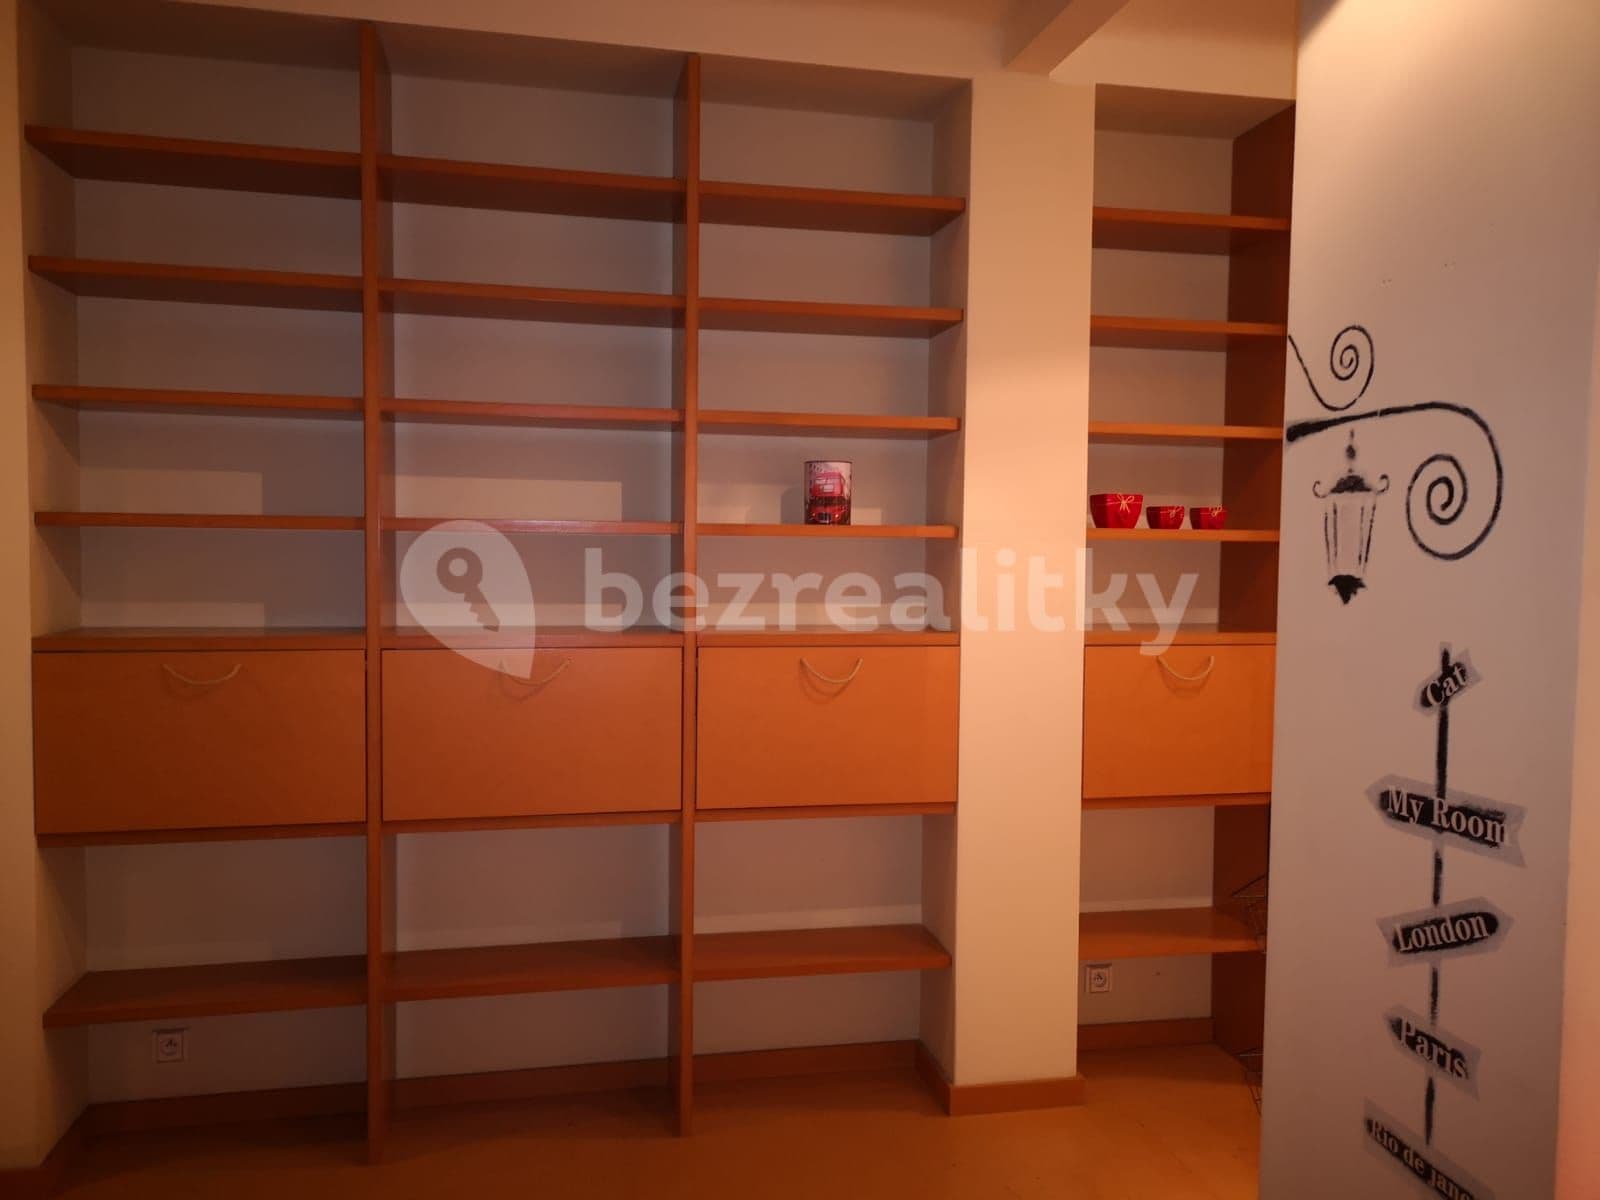 2 bedroom flat to rent, 50 m², Bratislava - mestská časť Staré Mesto, Bratislavský Region